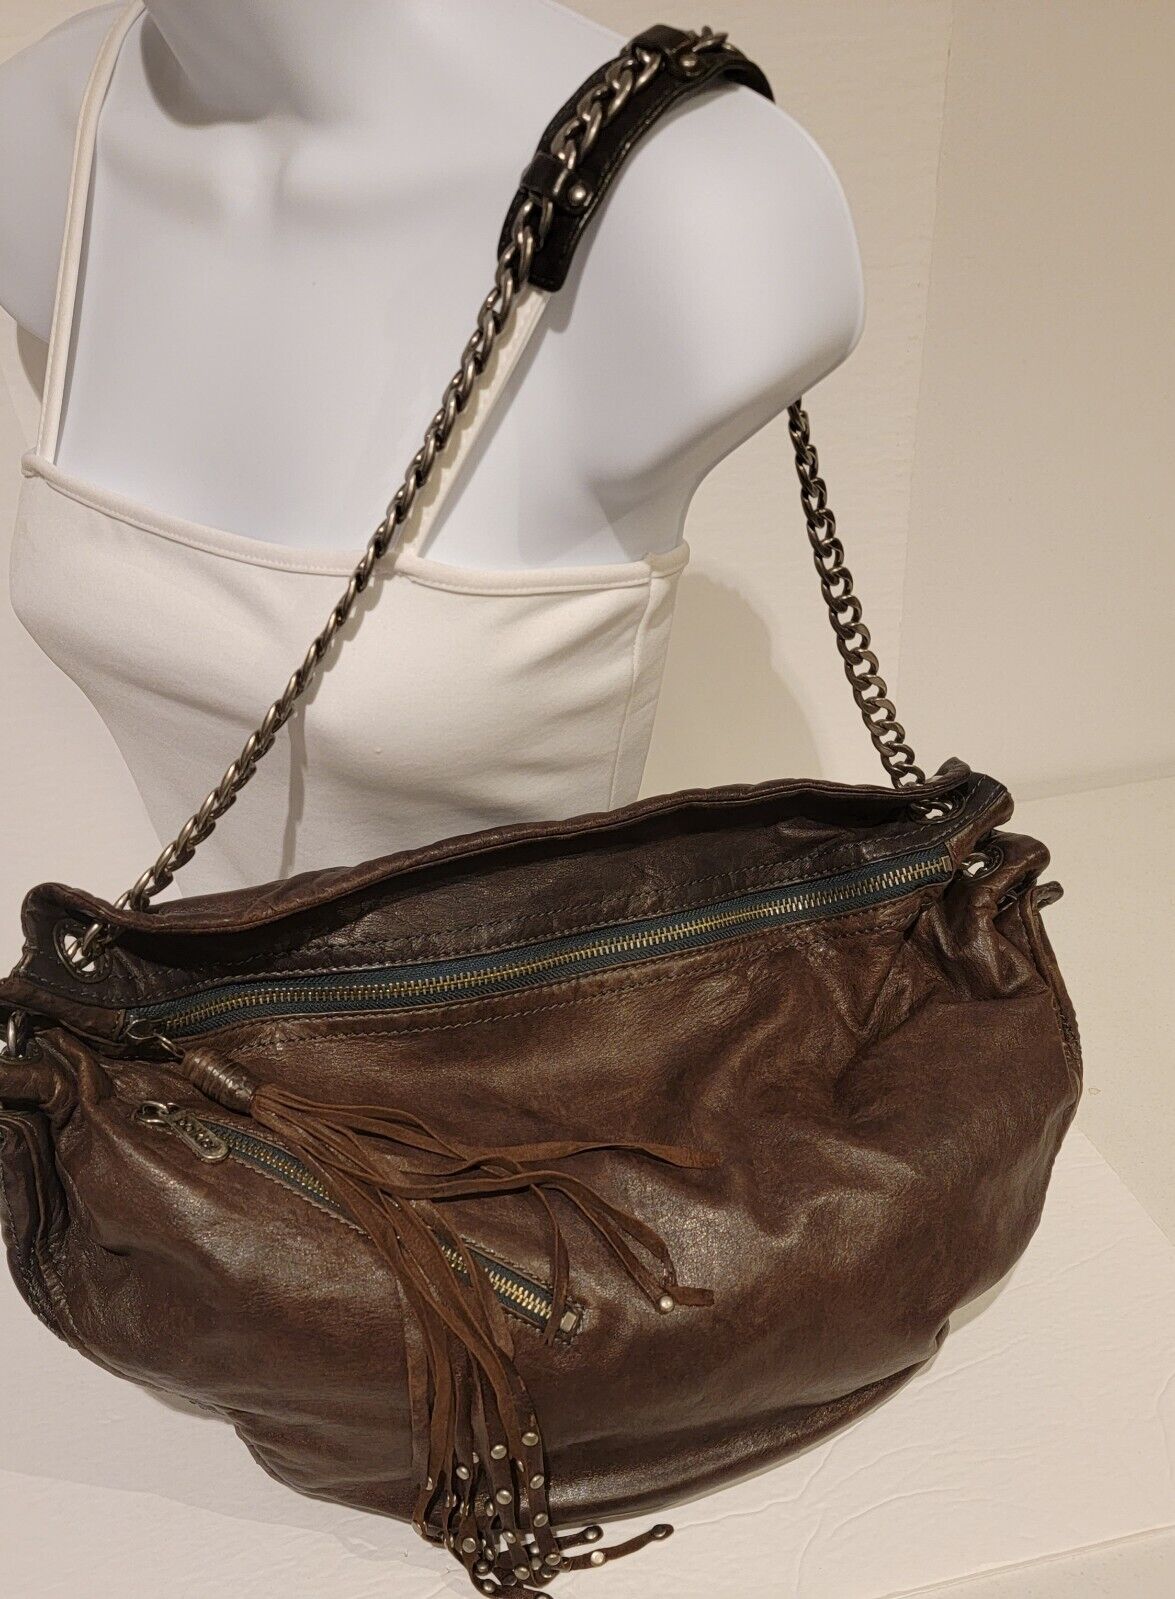 Botkier Brown Leather Hobo Shoulder Bag Large Purse Studded Tassel